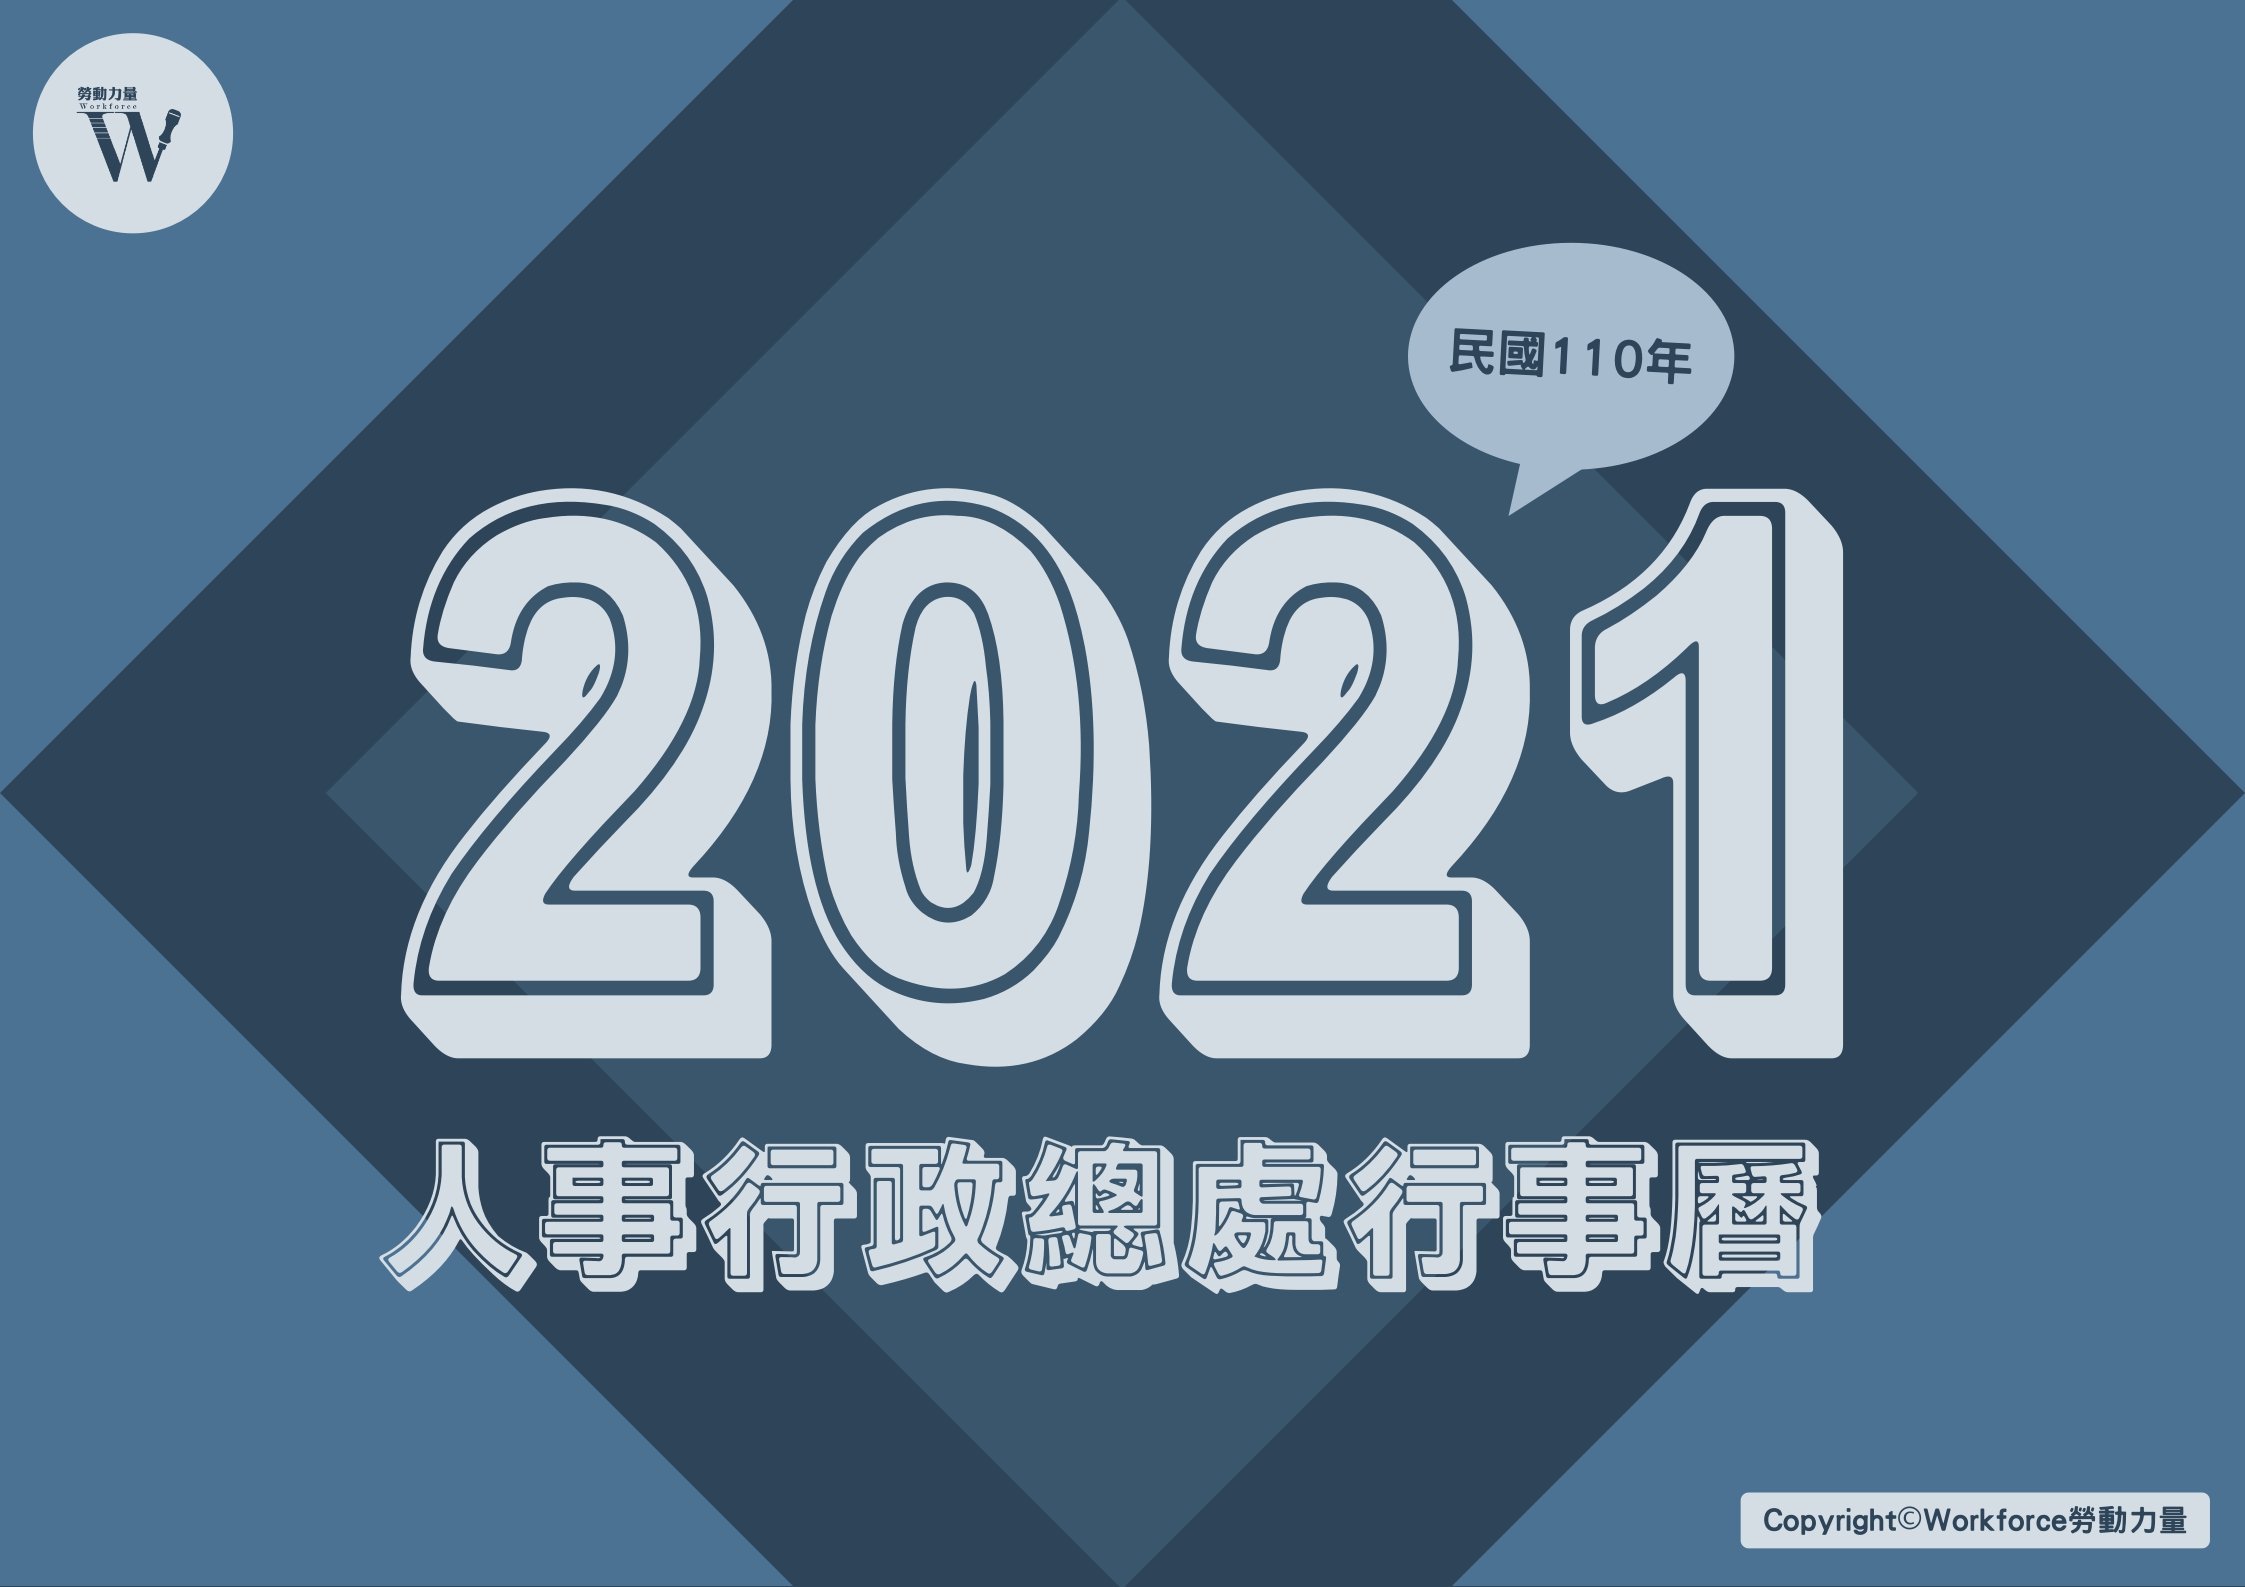 2021年（民國110年）人事行政總處行事曆